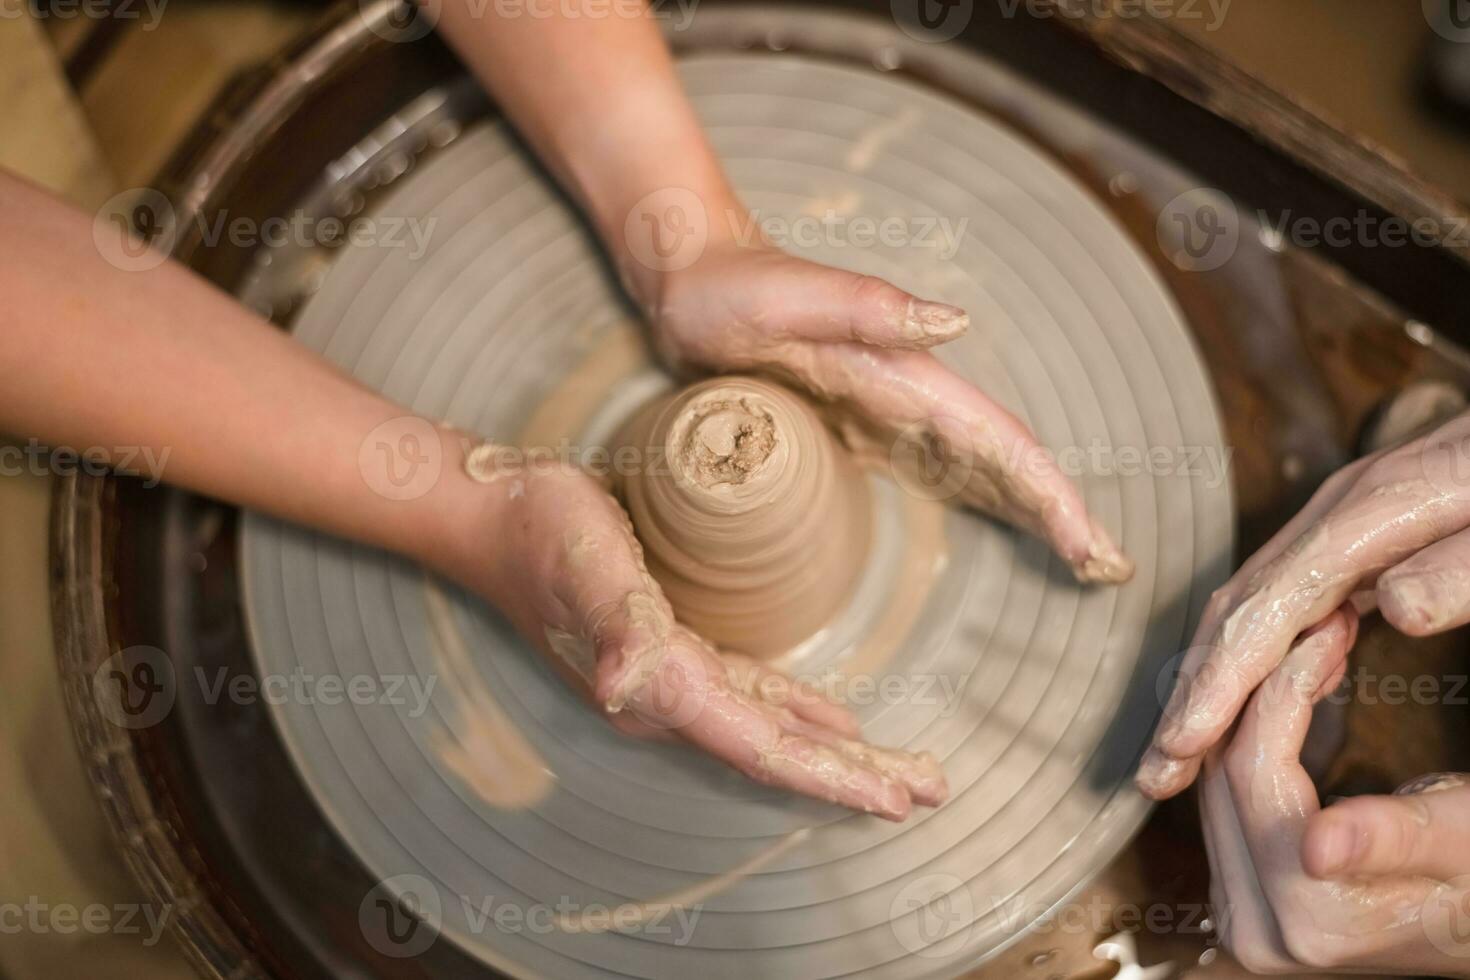 krukmakare flicka Arbetar på krukmakare hjul, framställning keramisk pott ut av lera i krukmakeri verkstad foto